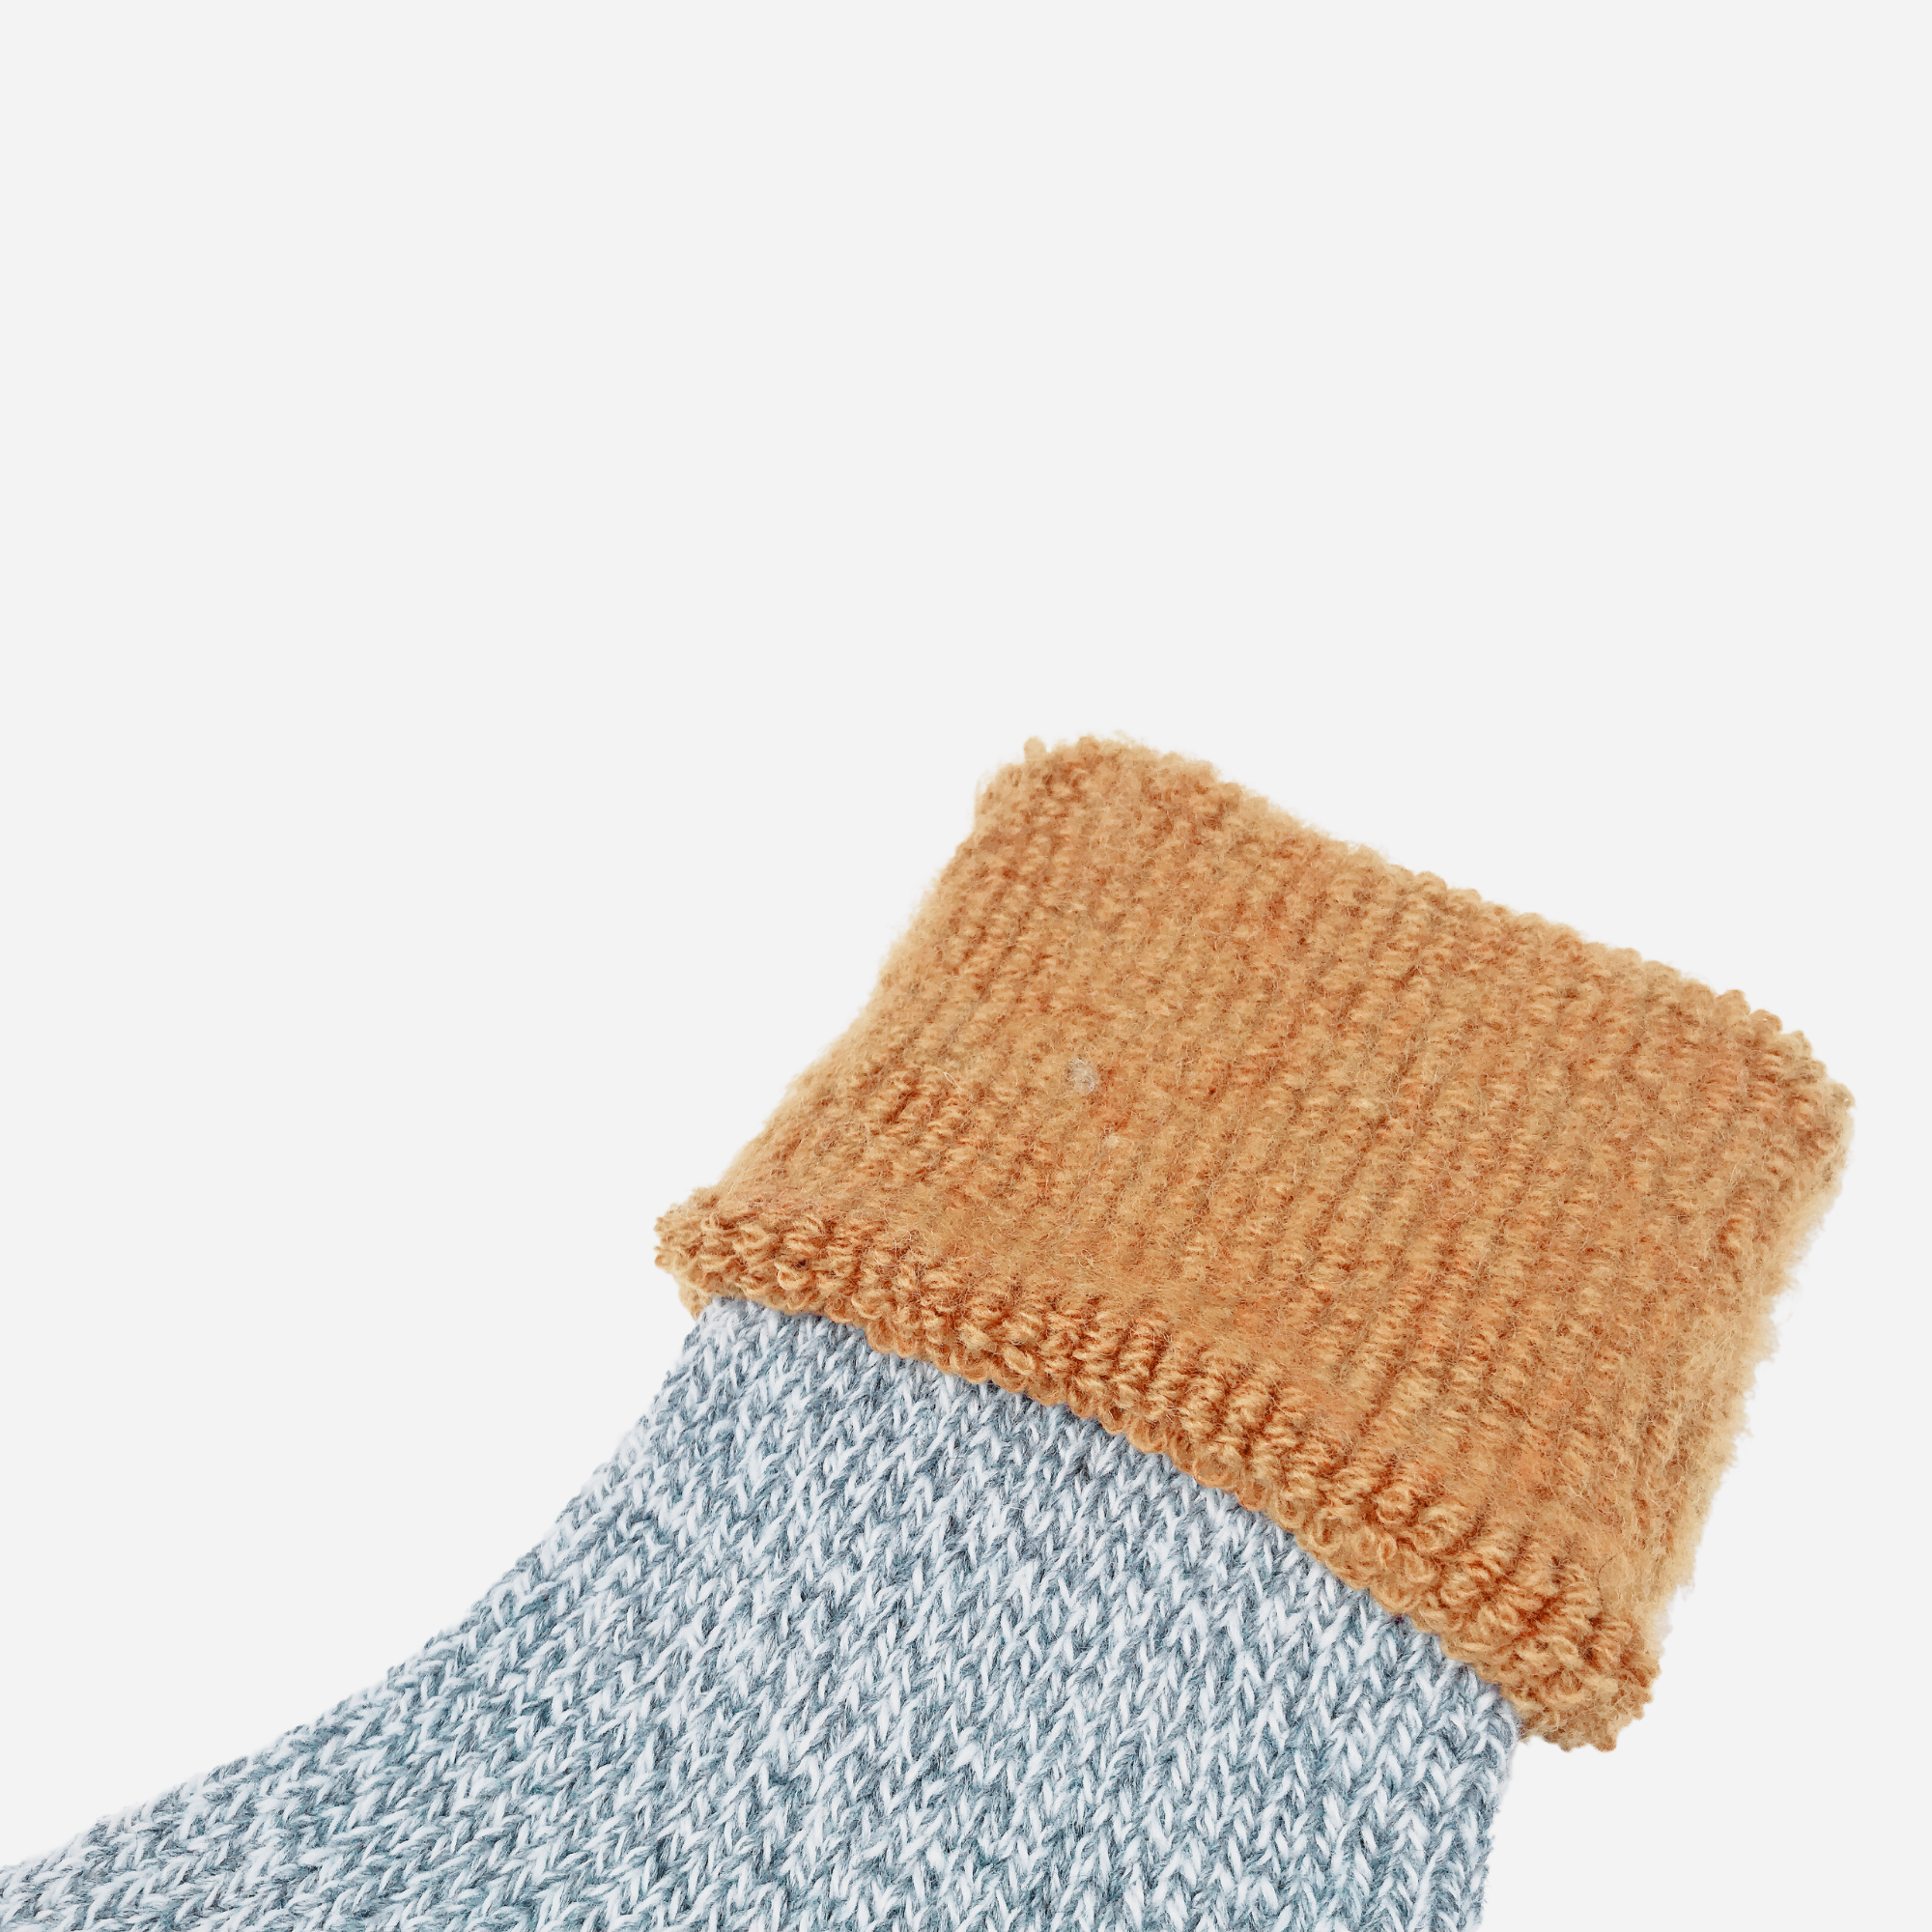 Washable wool fleece socks